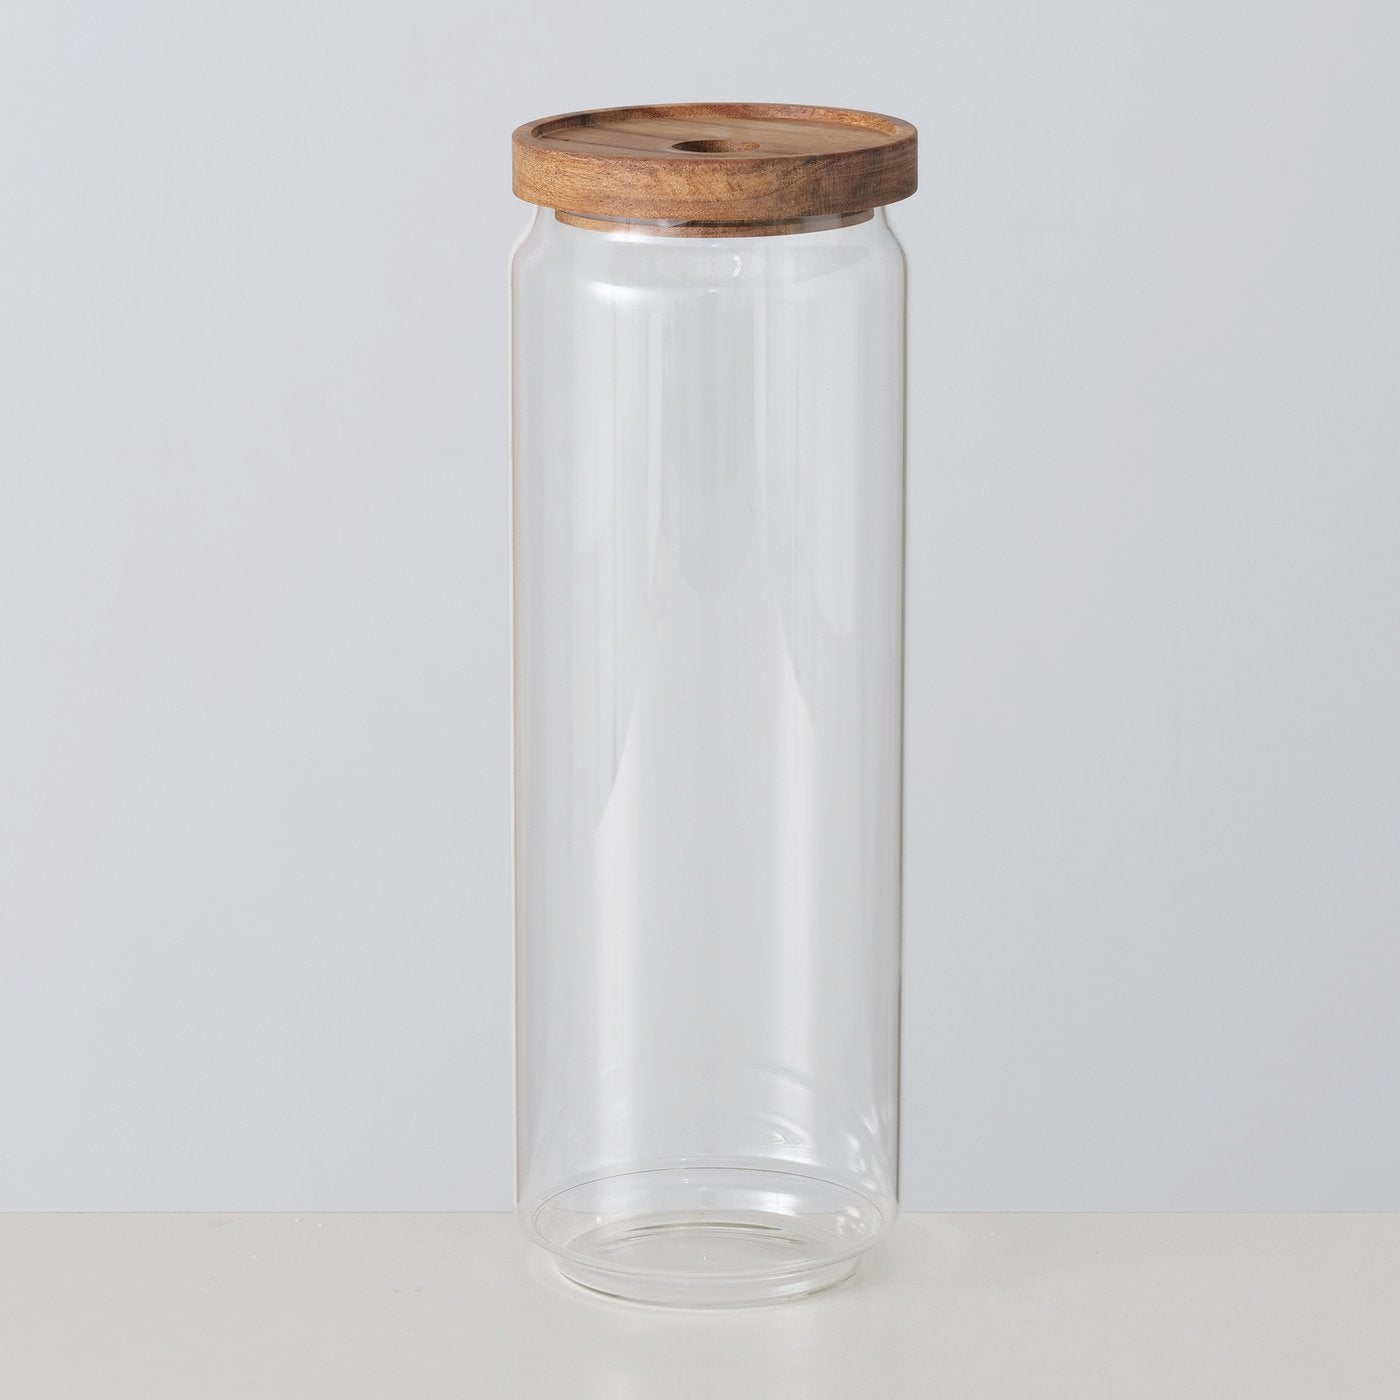 
                  
                    A TAVOLA Large Clear Glass Storage Jar
                  
                